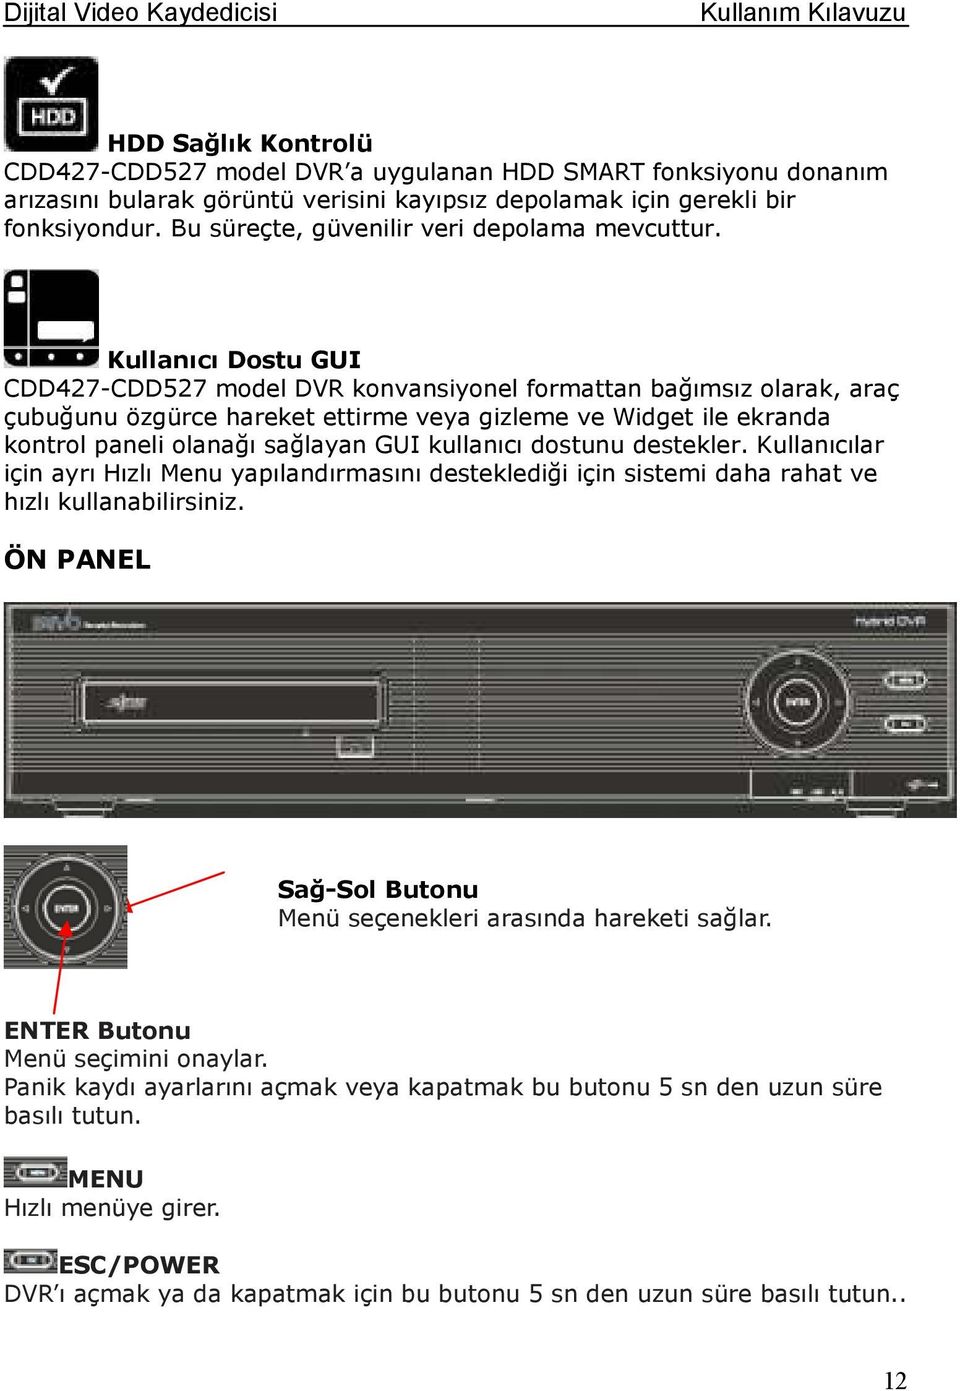 Kullanıcı Dostu GUI CDD427-CDD527 model DVR konvansiyonel formattan bağımsız olarak, araç çubuğunu özgürce hareket ettirme veya gizleme ve Widget ile ekranda kontrol paneli olanağı sağlayan GUI